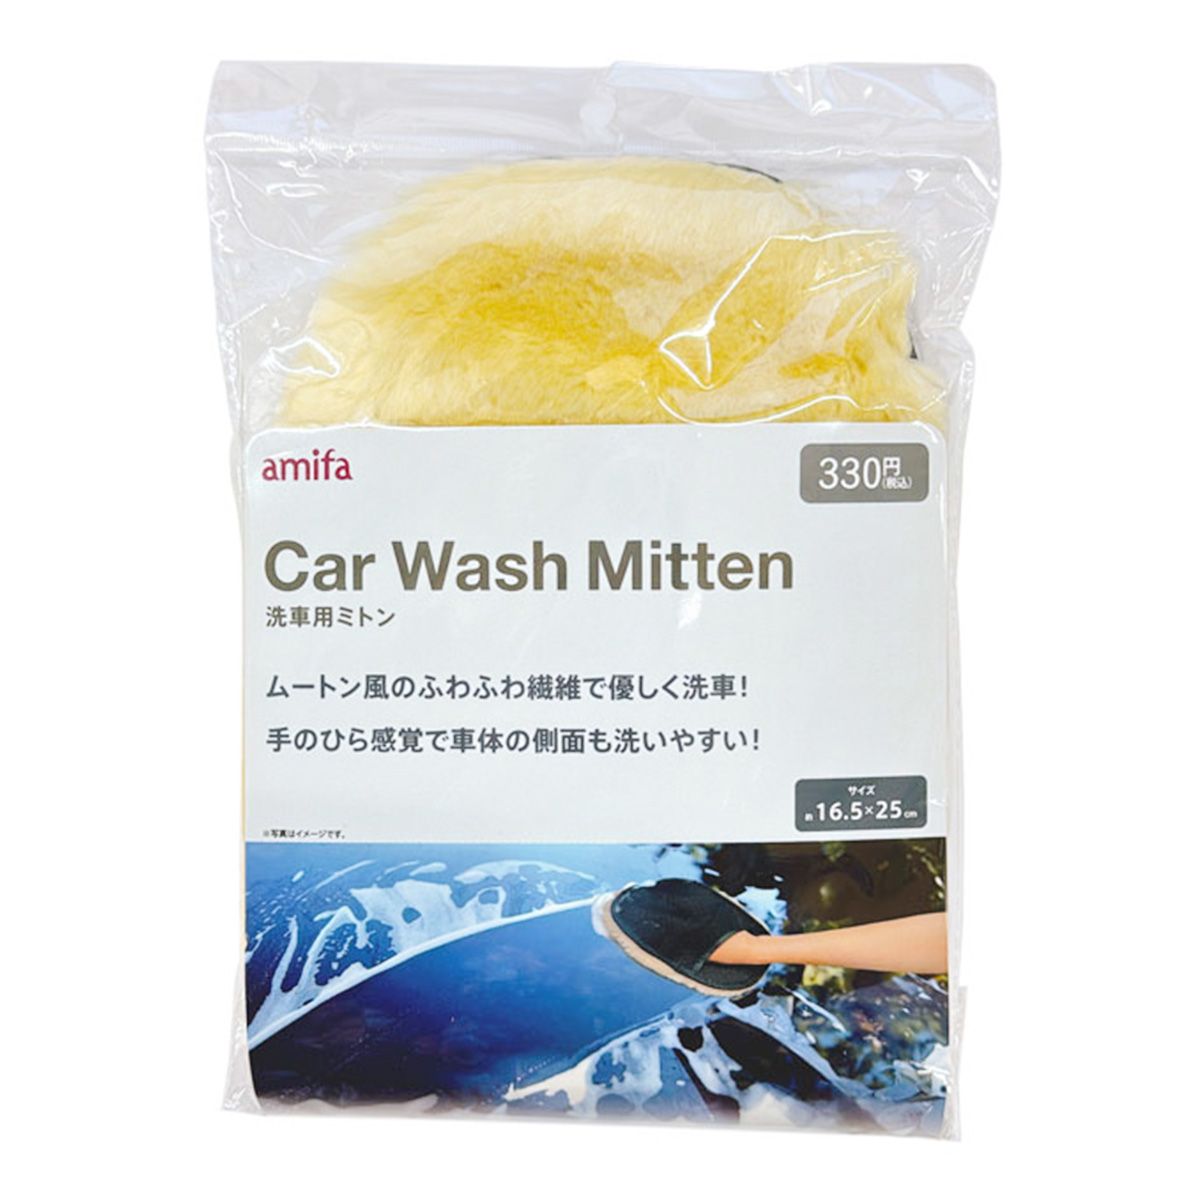 洗車用ミトン 0356/362524